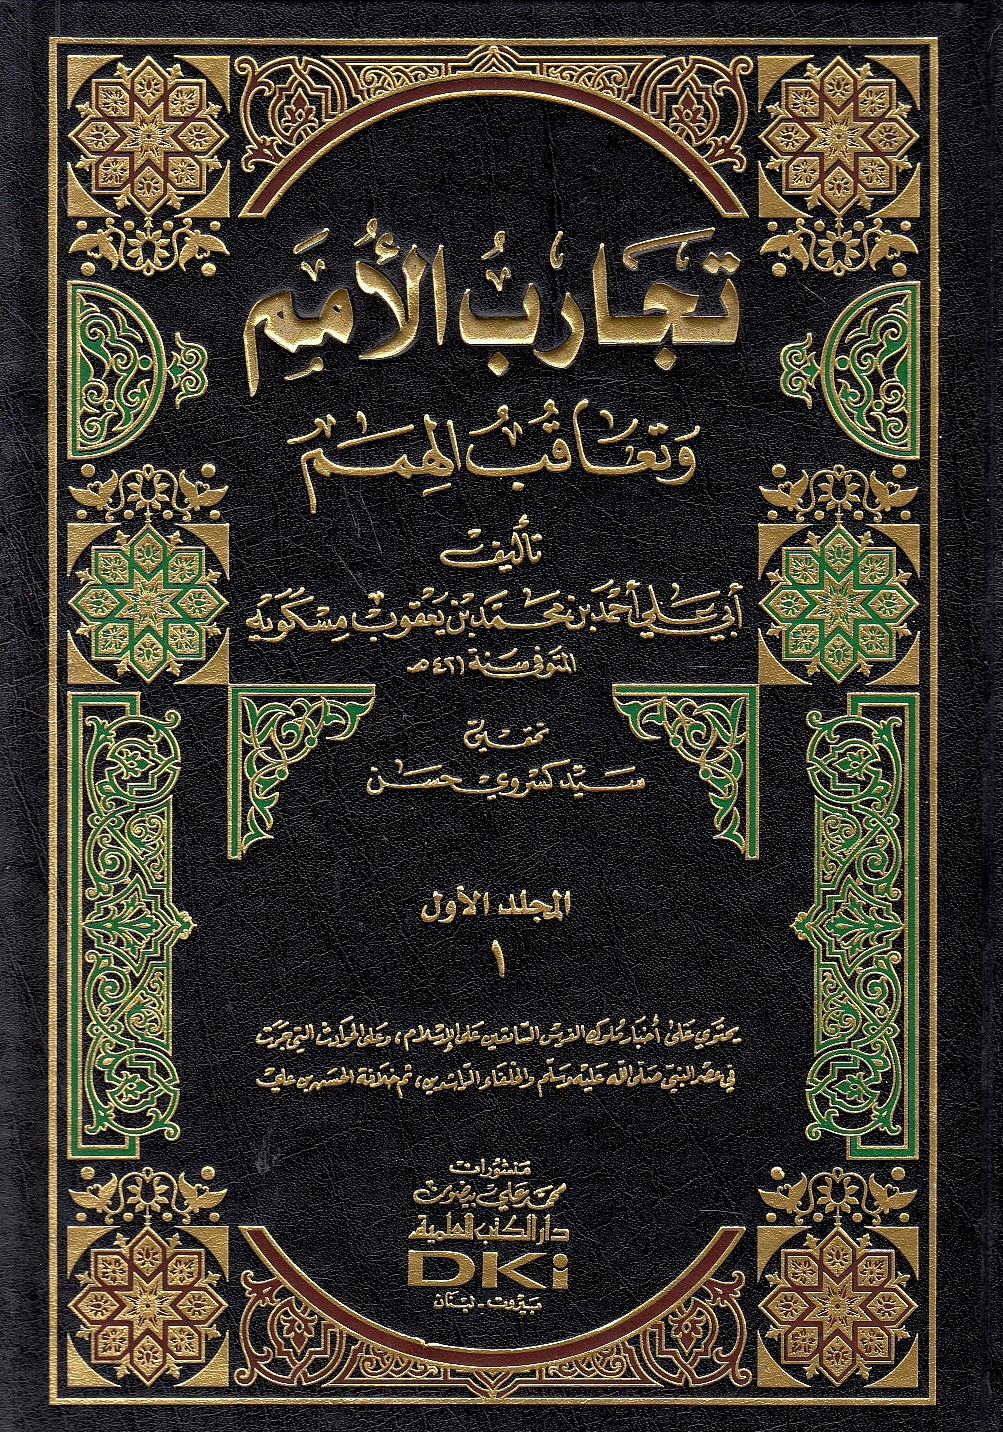 Tajarib al-Umam wa Ta'aqub al-Himam.